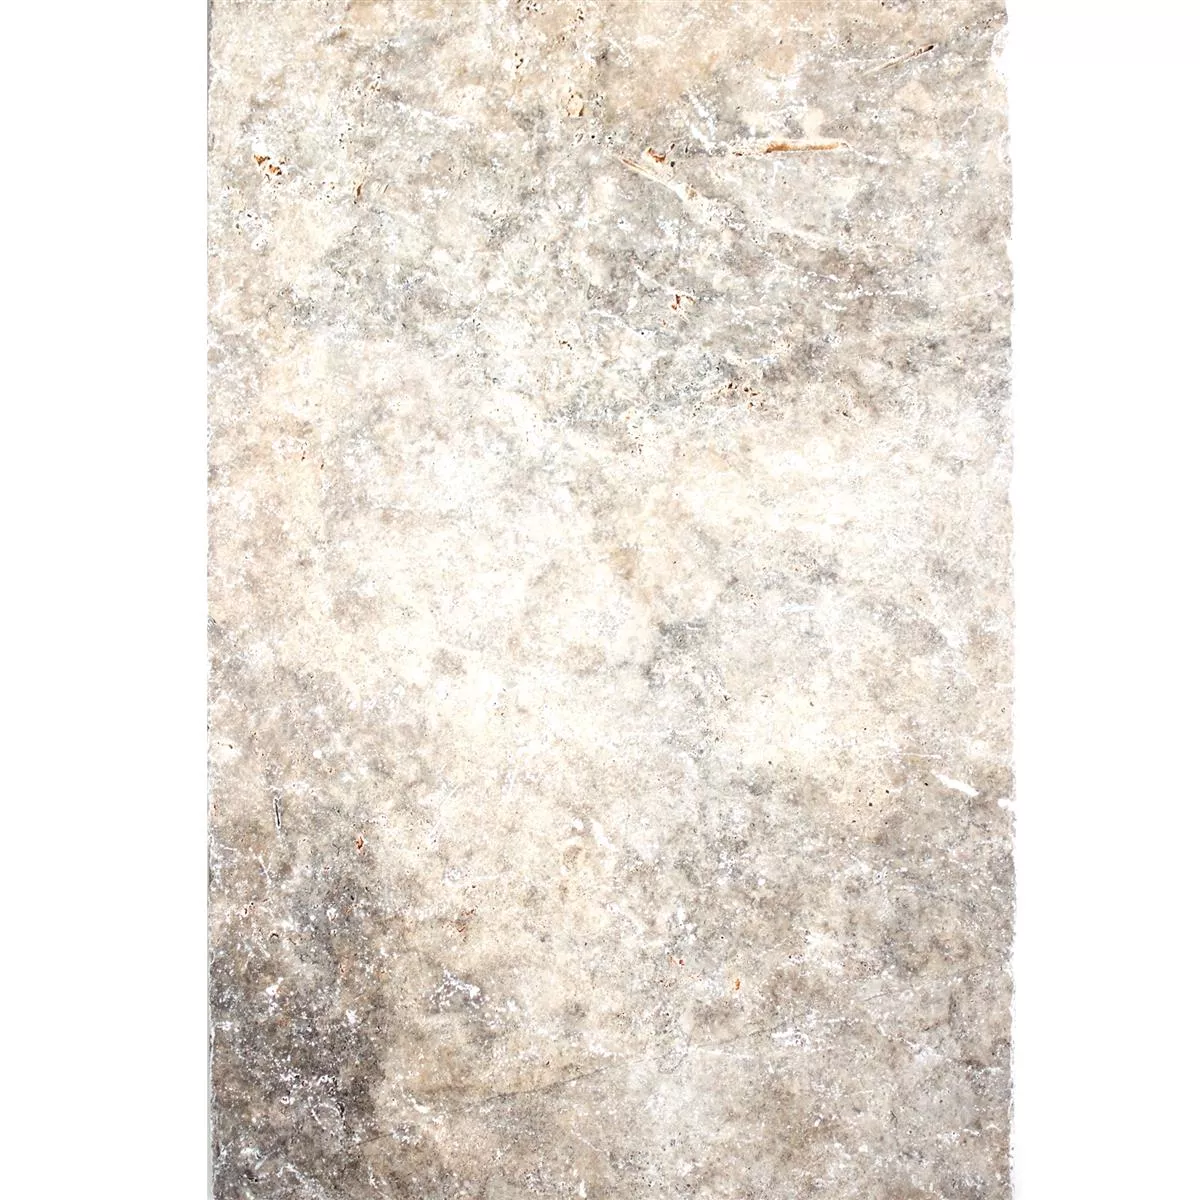 Dlaždice Z Přírodního Kamene Z Travertinu. Nestor Stříbrná 40,6x60cm